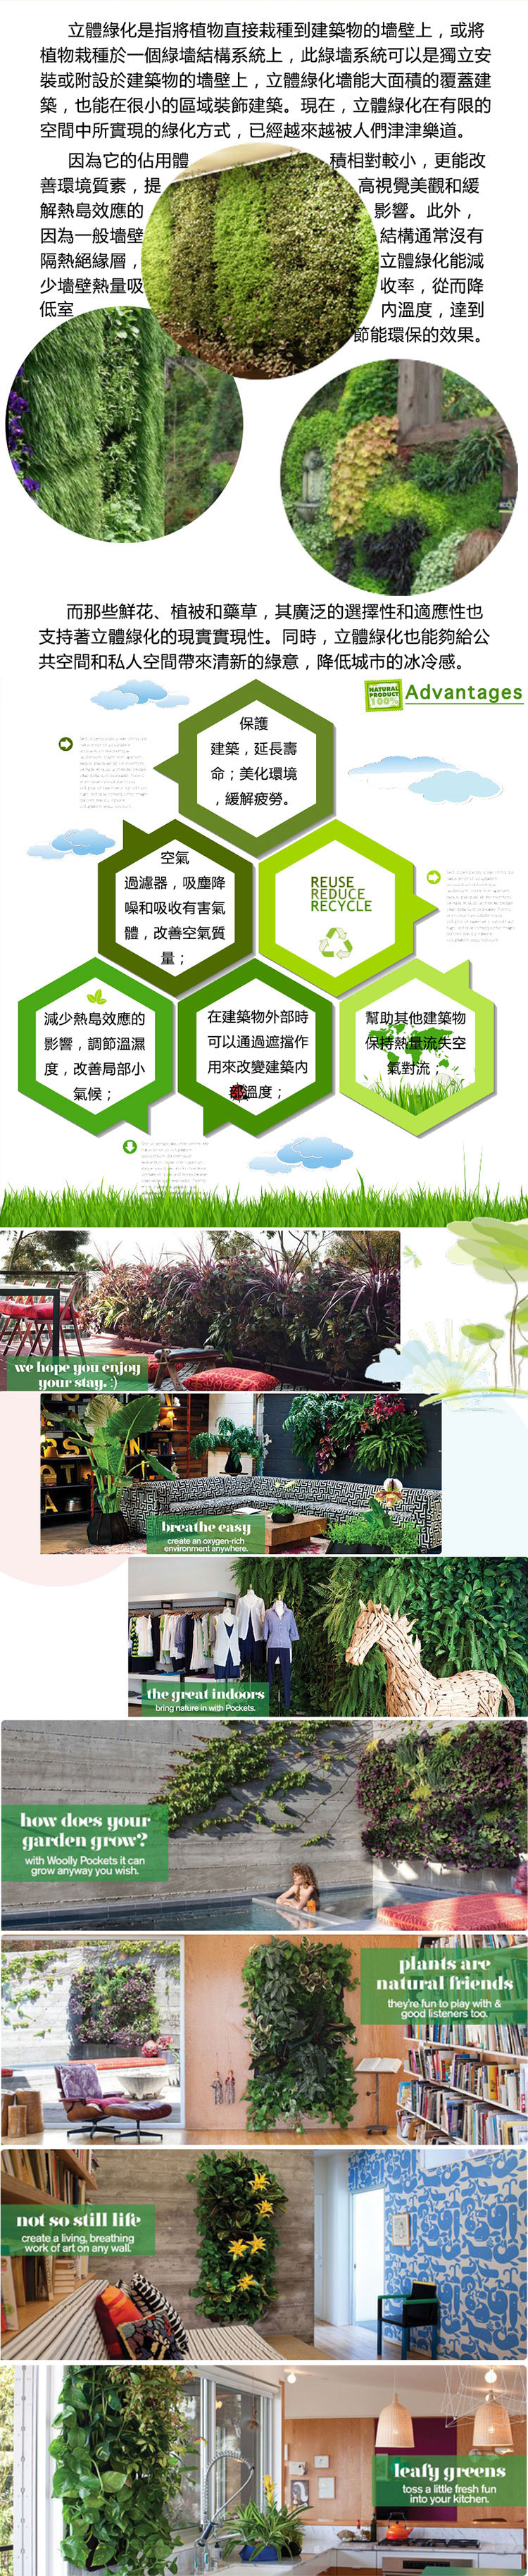 立体绿化,绿化墙,外墙绿化,屋顶绿化,垂直绿化